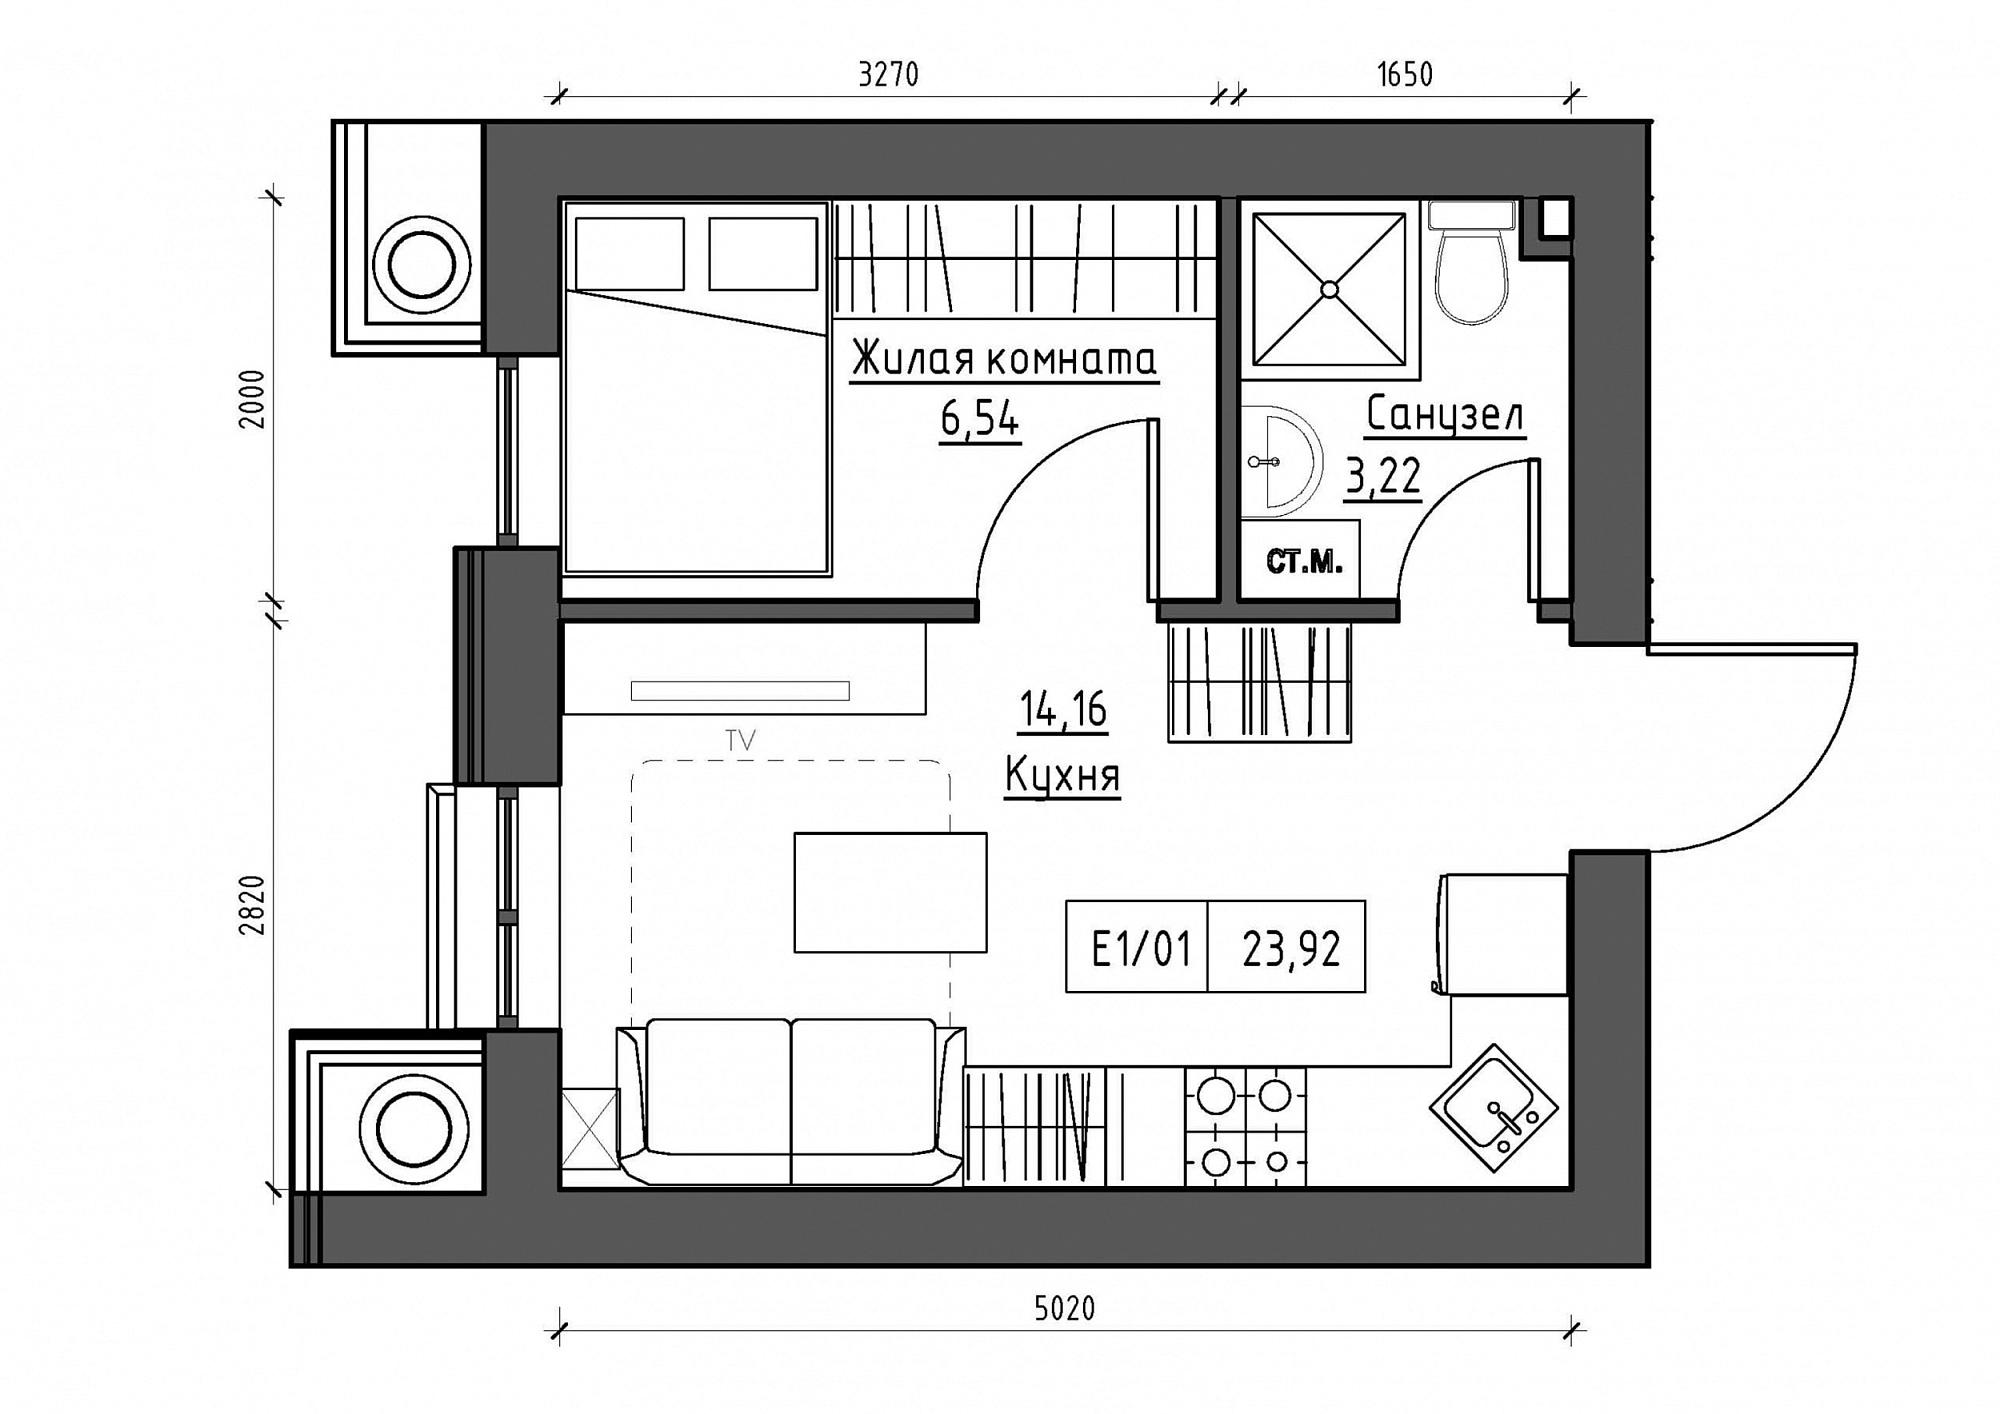 Планировка 1-к квартира площей 23.92м2, KS-012-05/0015.